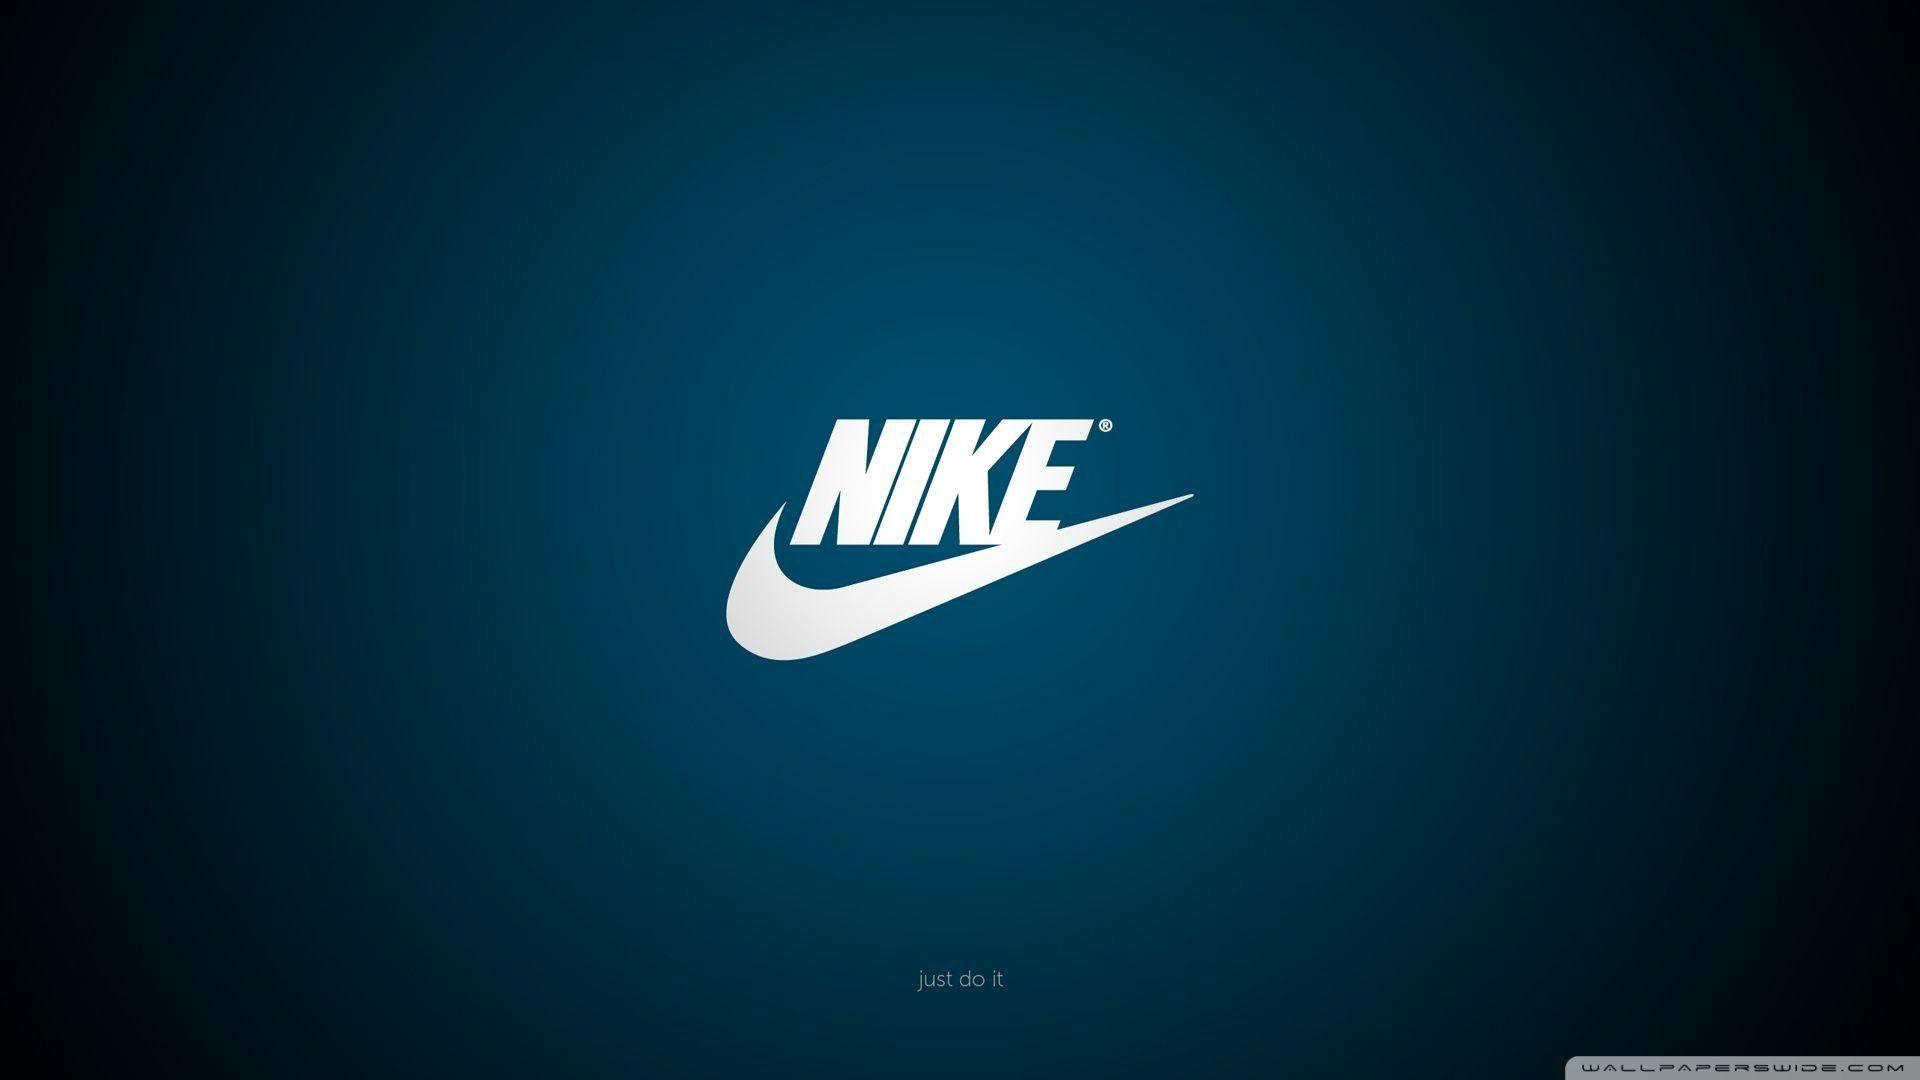 Hình nền 1920x1080 Nike 1920x1080 Hình nền Nike đen mới 60 Hình ảnh 2019